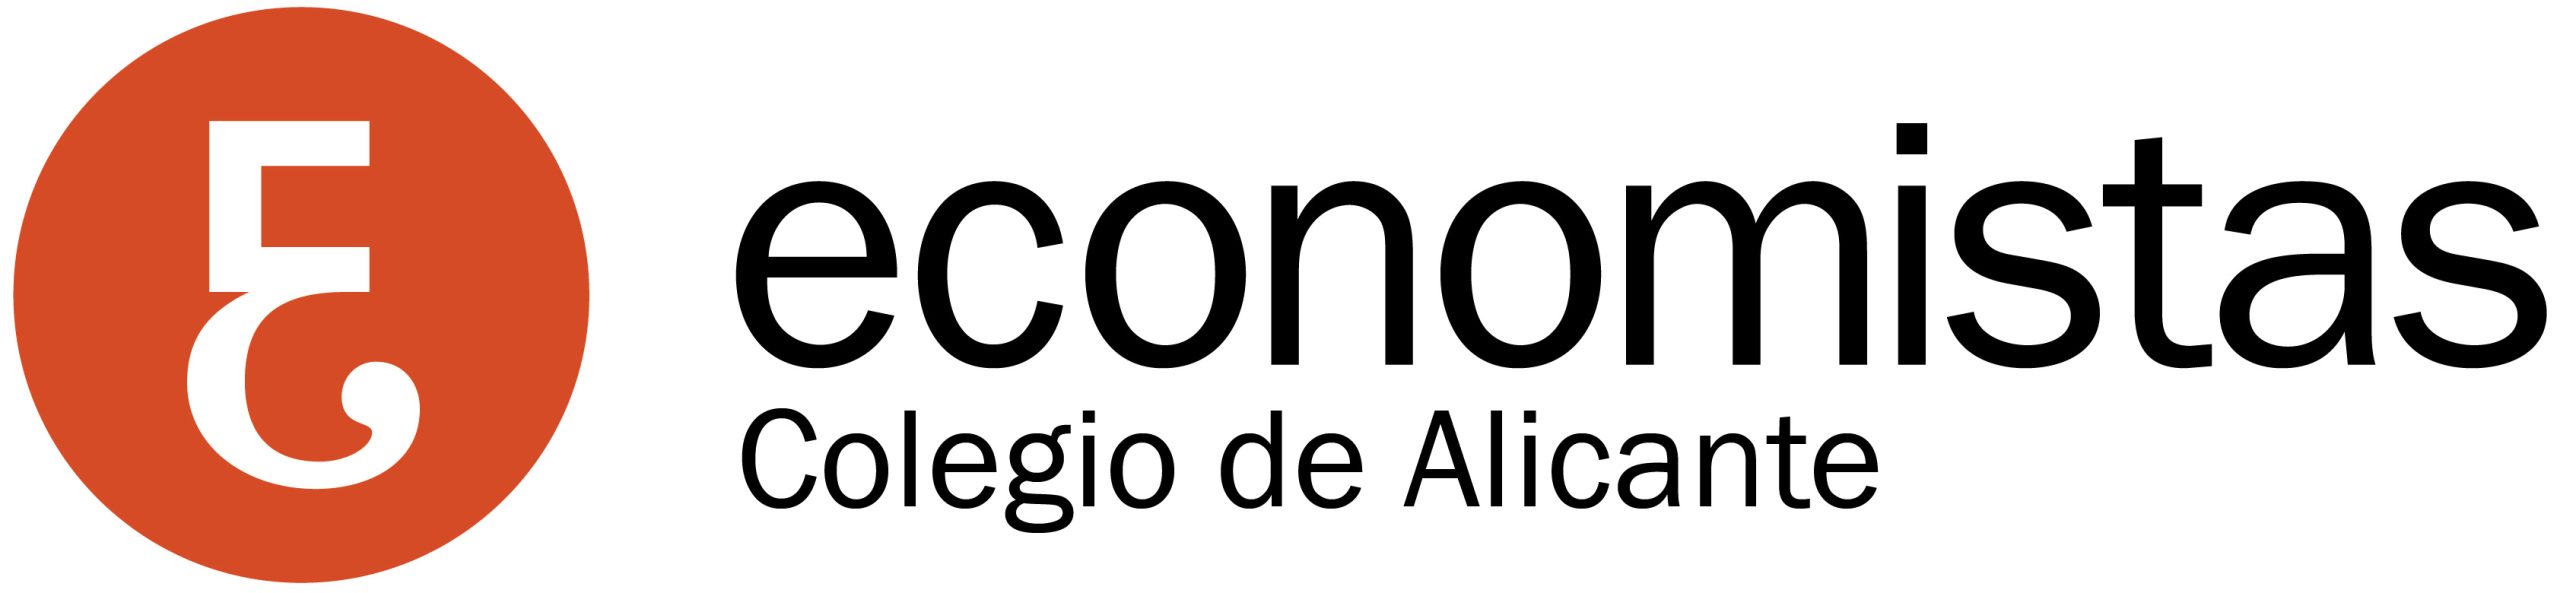 Colegio de economistas de Alicante